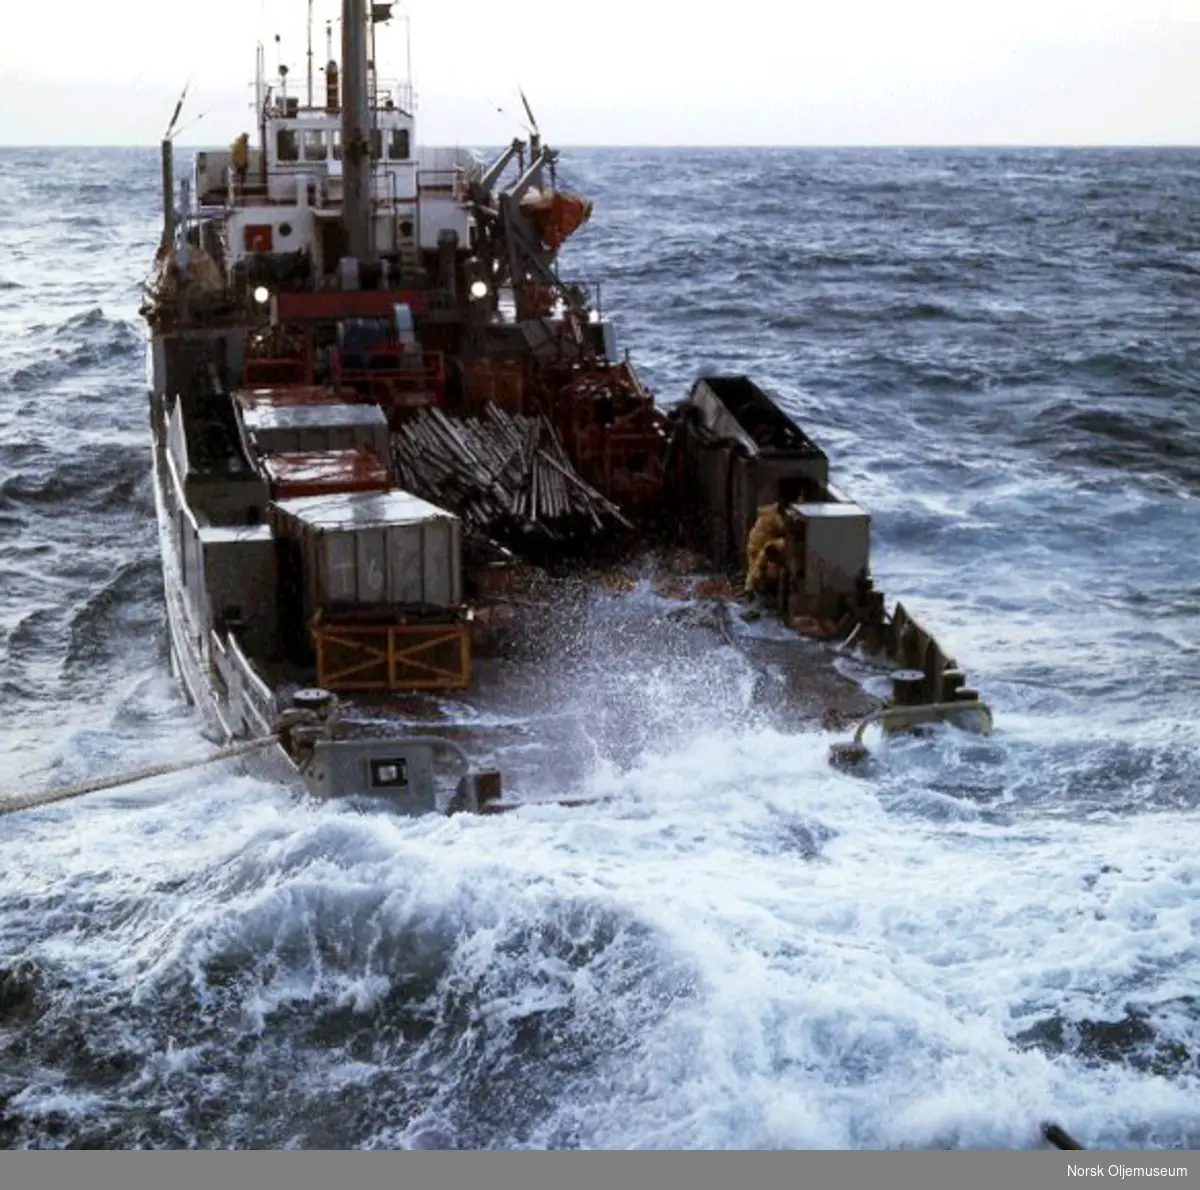 Supplybåten "Holstentor" i store bølger. Mannskapet jobber mens bølgene slår over dekk.